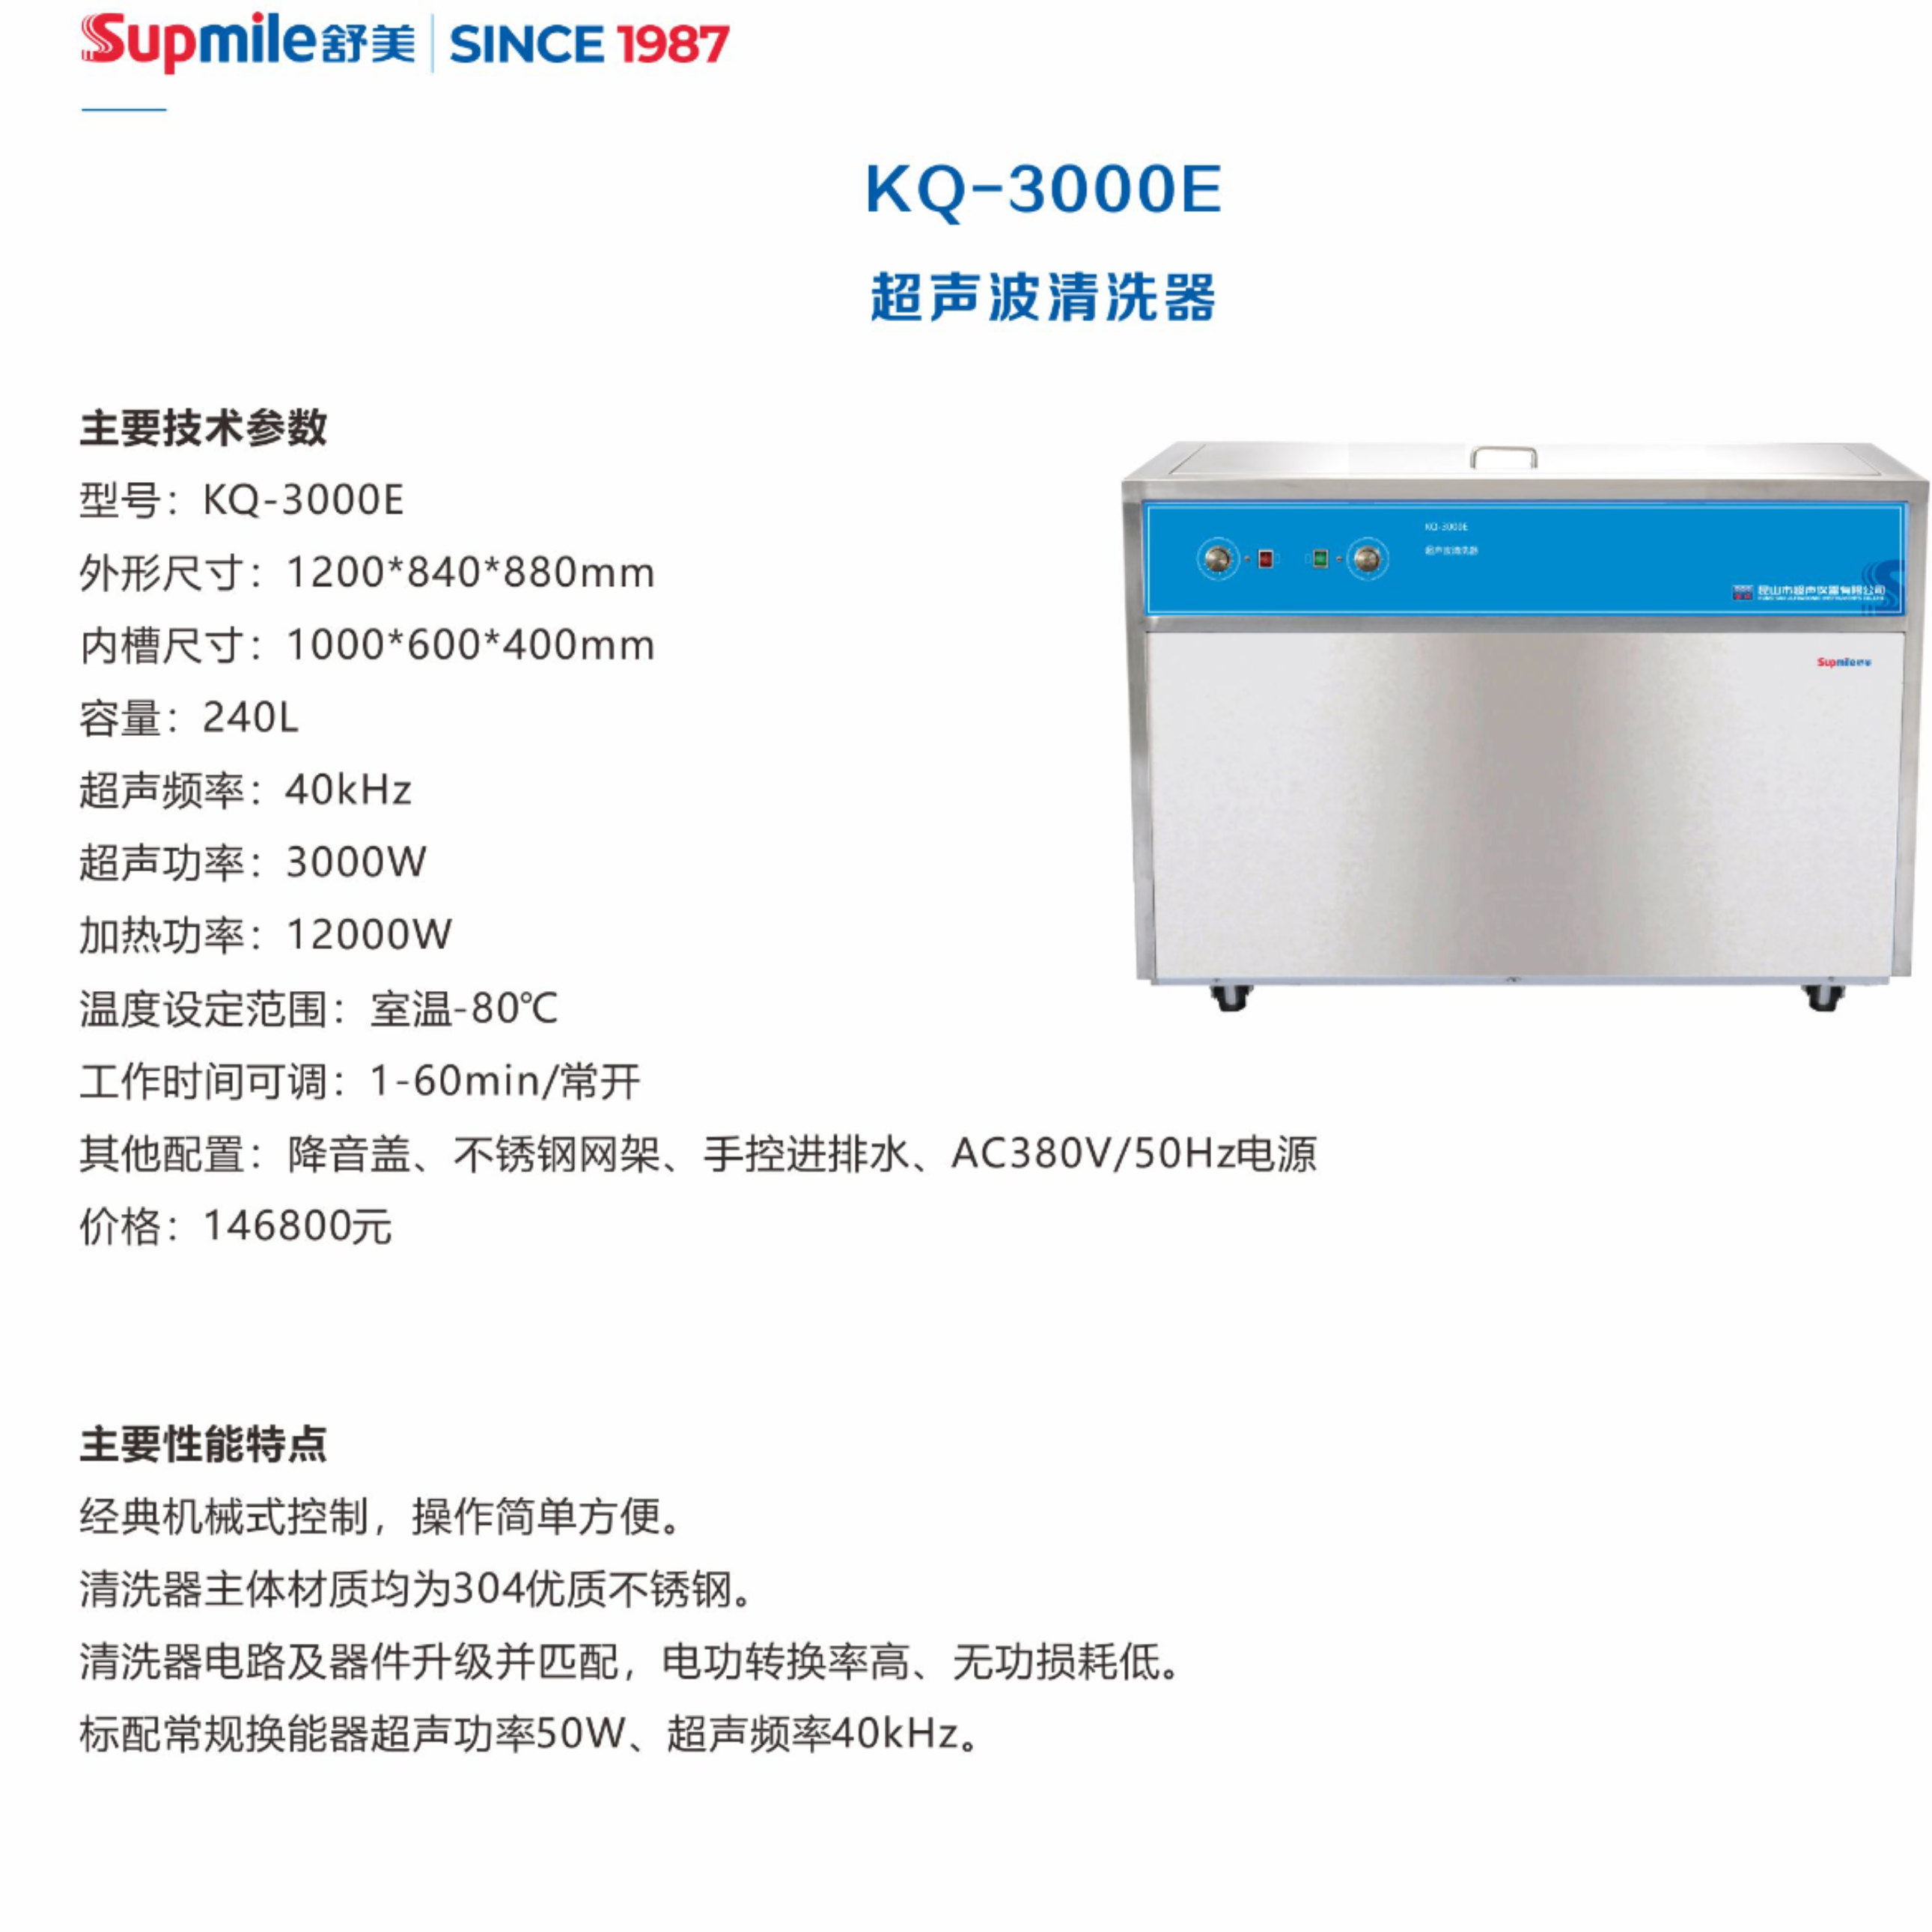 舒美supmile超声波清洗器KQ-3000E